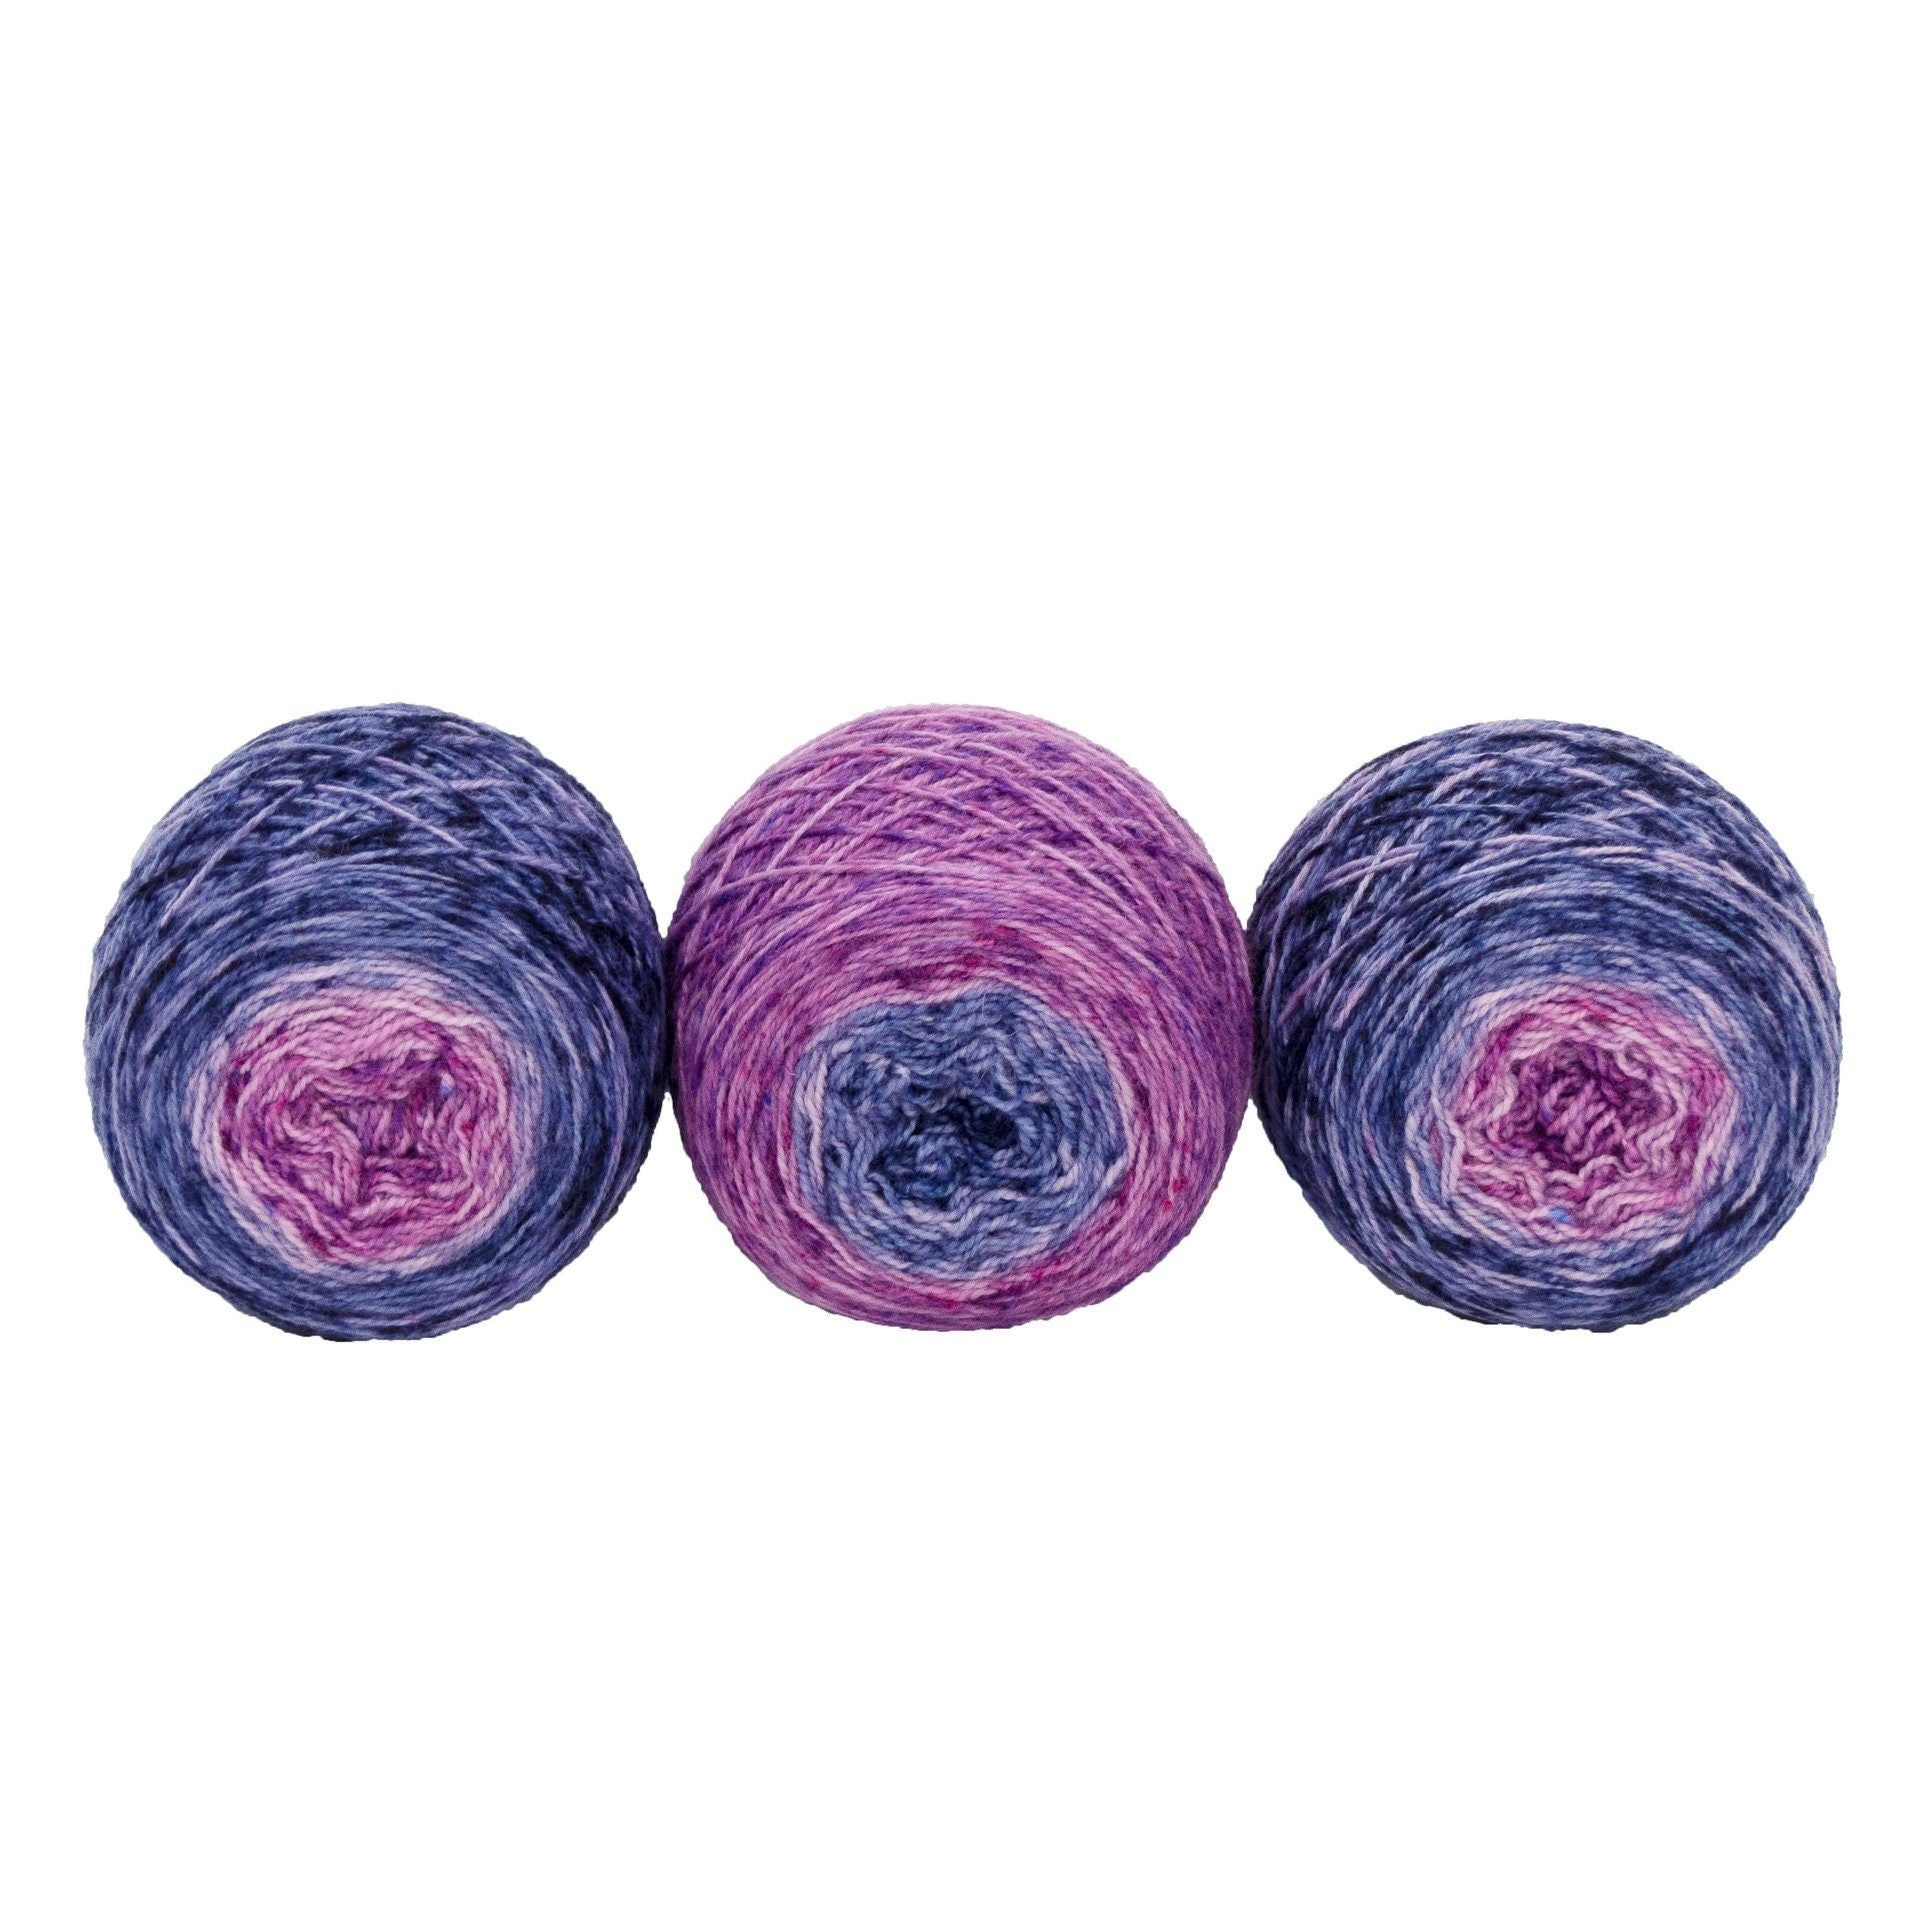 Full " Blueberry & Hibiscus " - Llark SW BFL/Nylon Speckle Gradient Fingering Weight Yarn 100g Skein